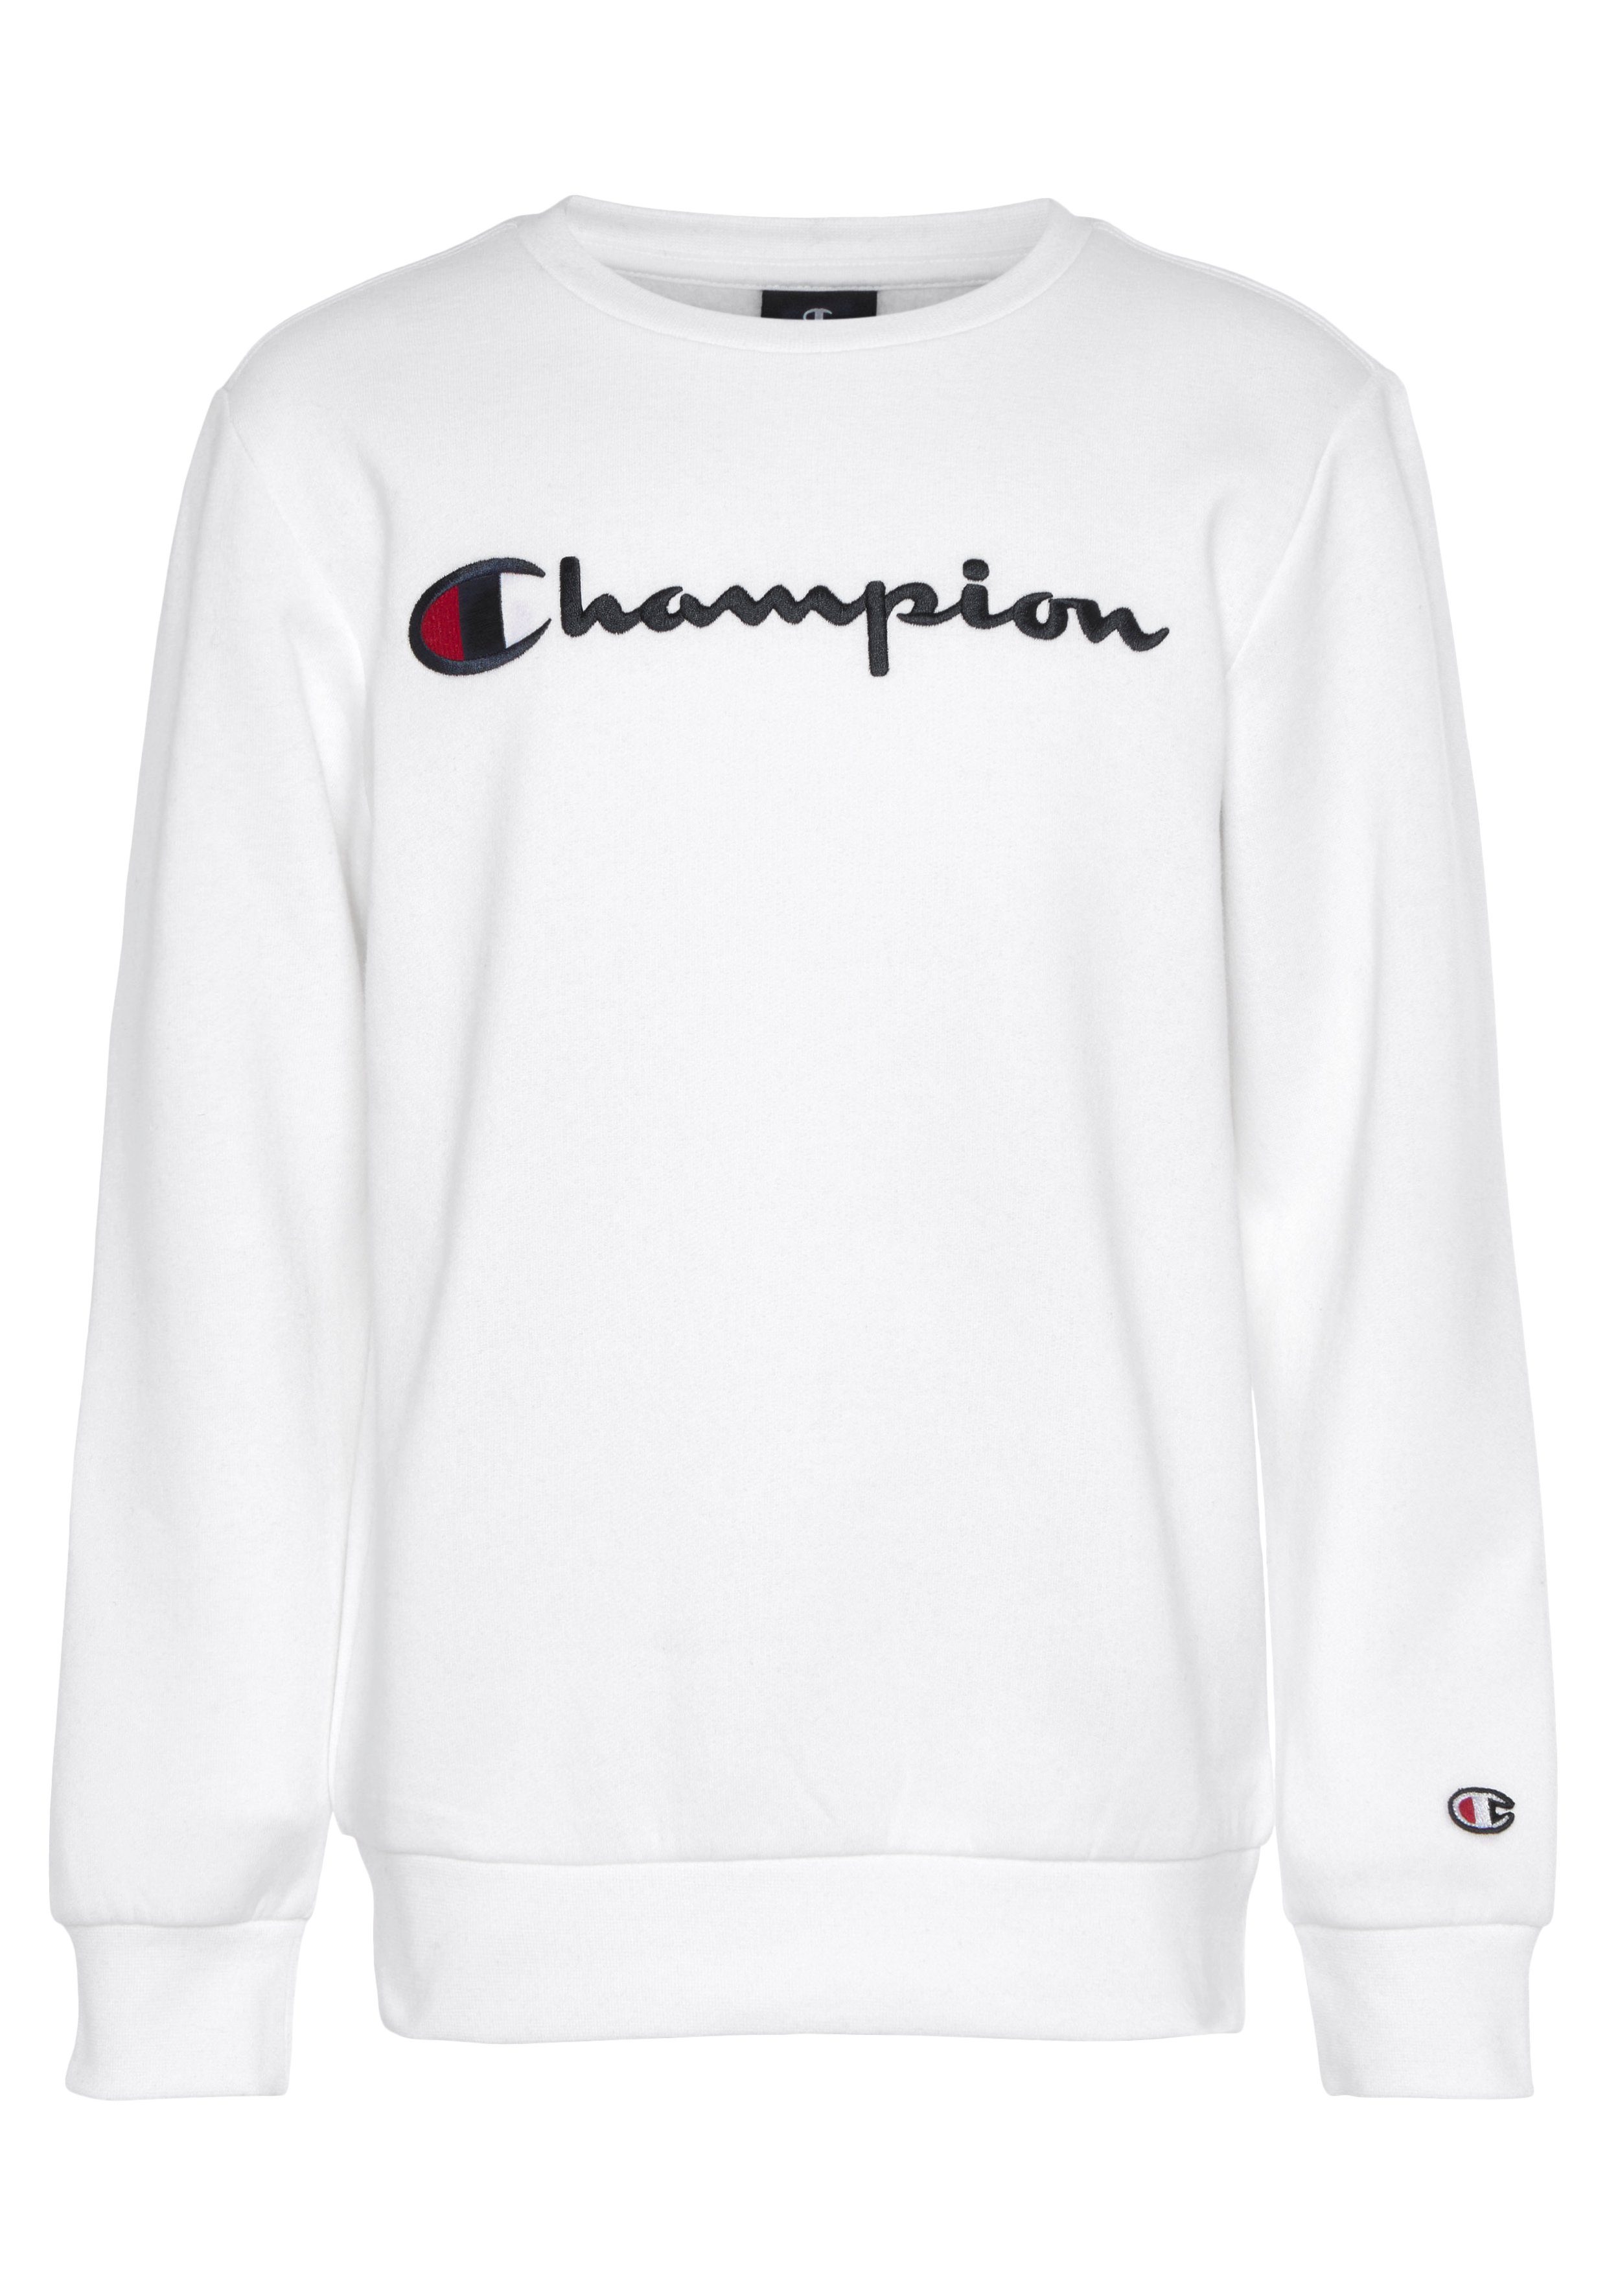 Champion Sweatshirt Classic für Crewneck Kinder large Logo weiß - Sweatshirt